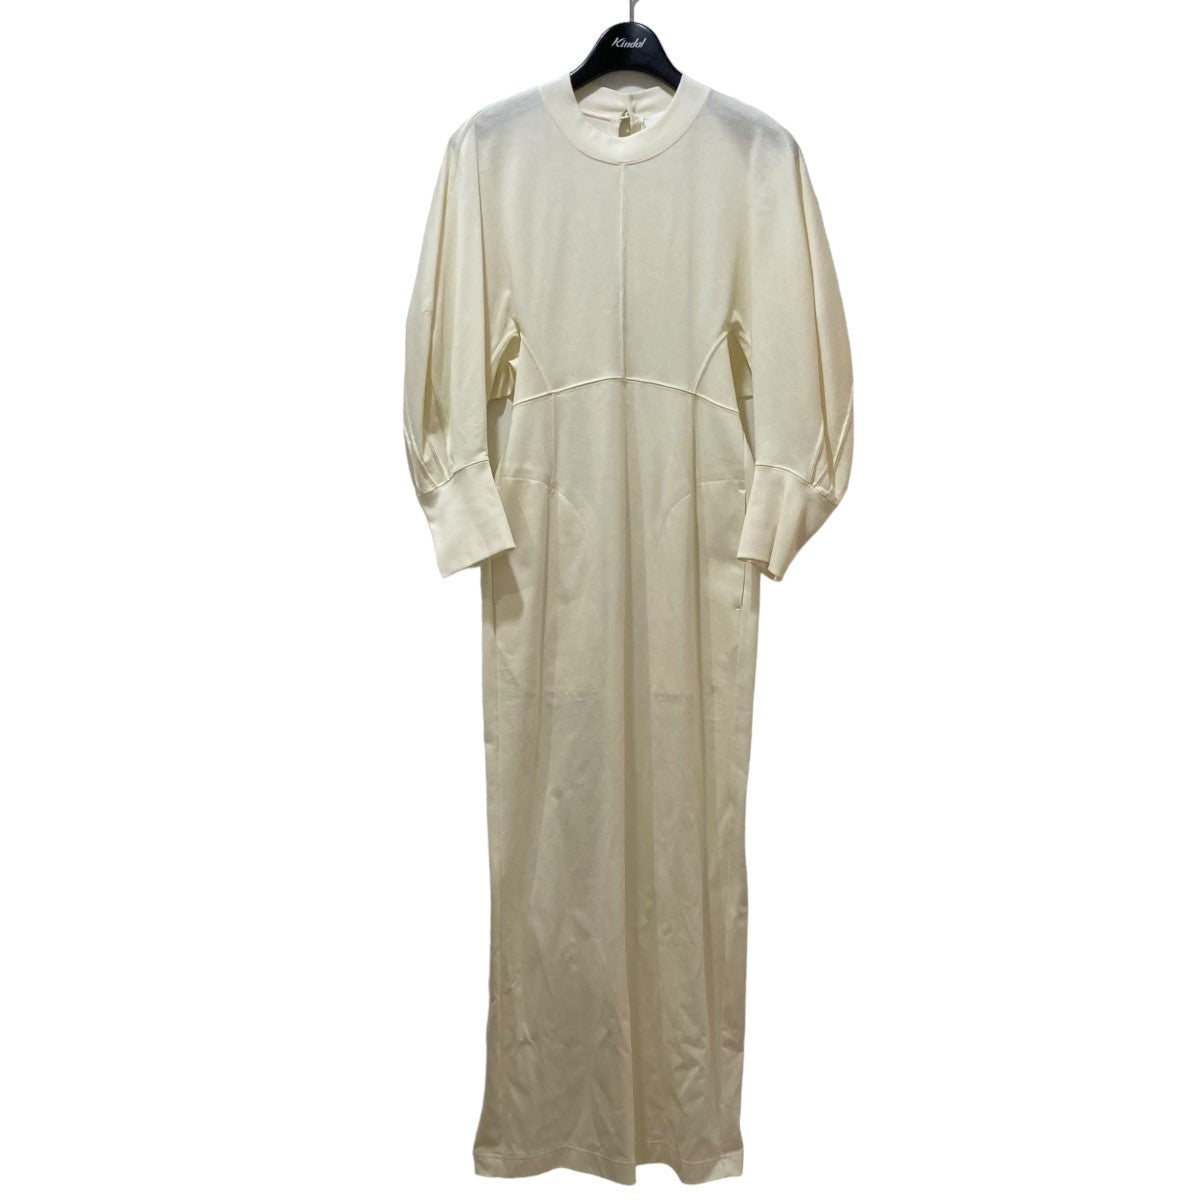 mame kurogouchi(マメクロゴウチ) Classic Cotton Dress コットン 